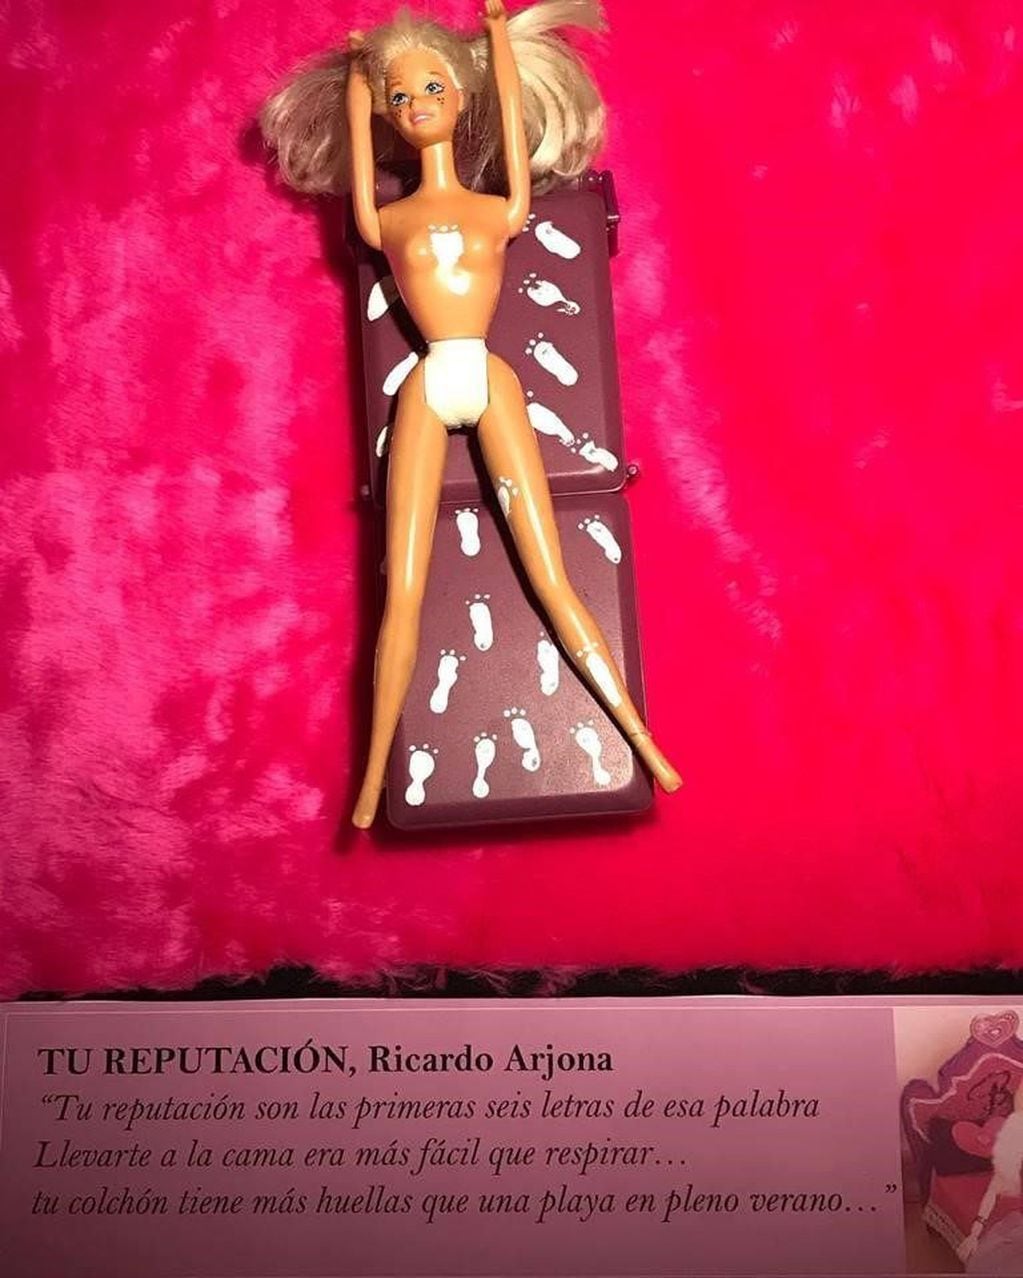 La imagen representa la canción "Tu Reputación" de Ricardo Ajona (Facebook)